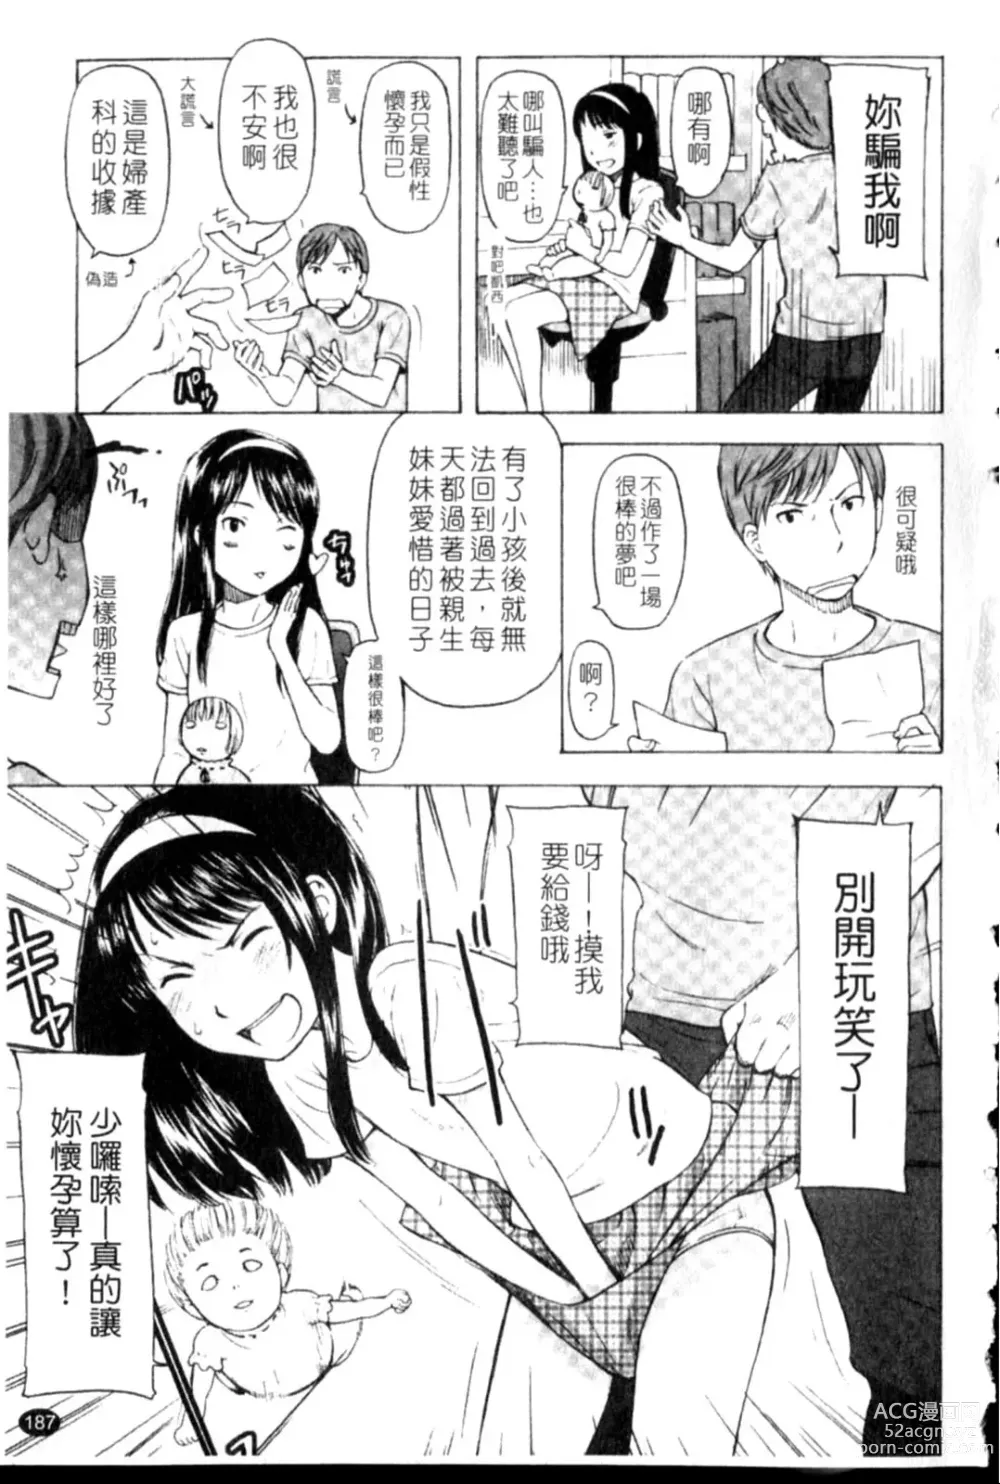 Page 187 of manga Porno Graffitti